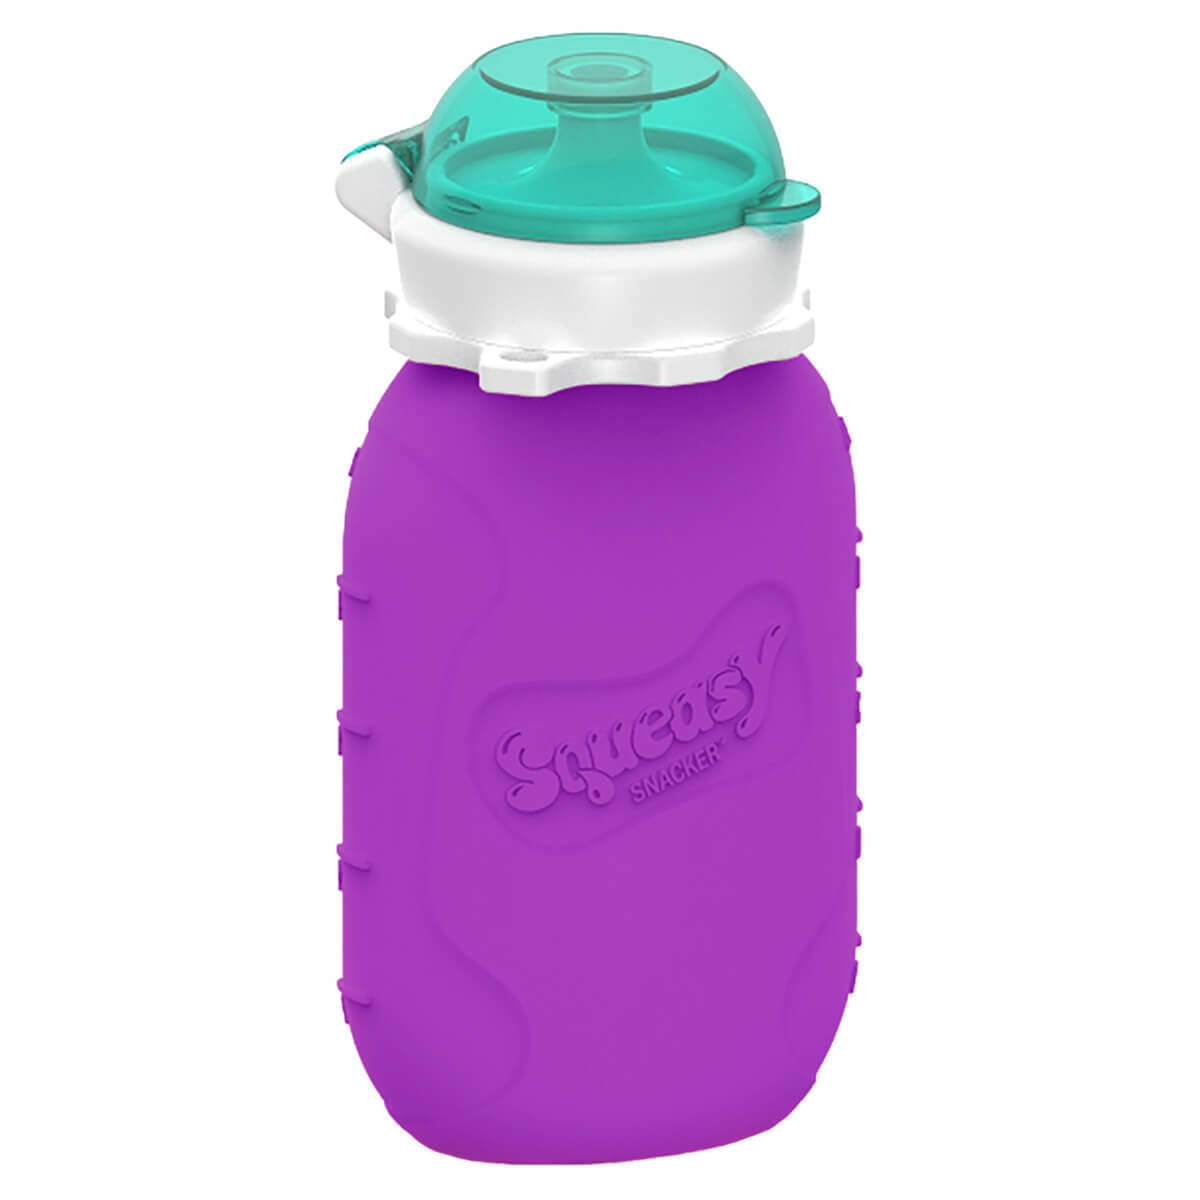 Squeasy Gear snack pouch Squeasy Gear Squeasy Snacker - Purple 6 OZ